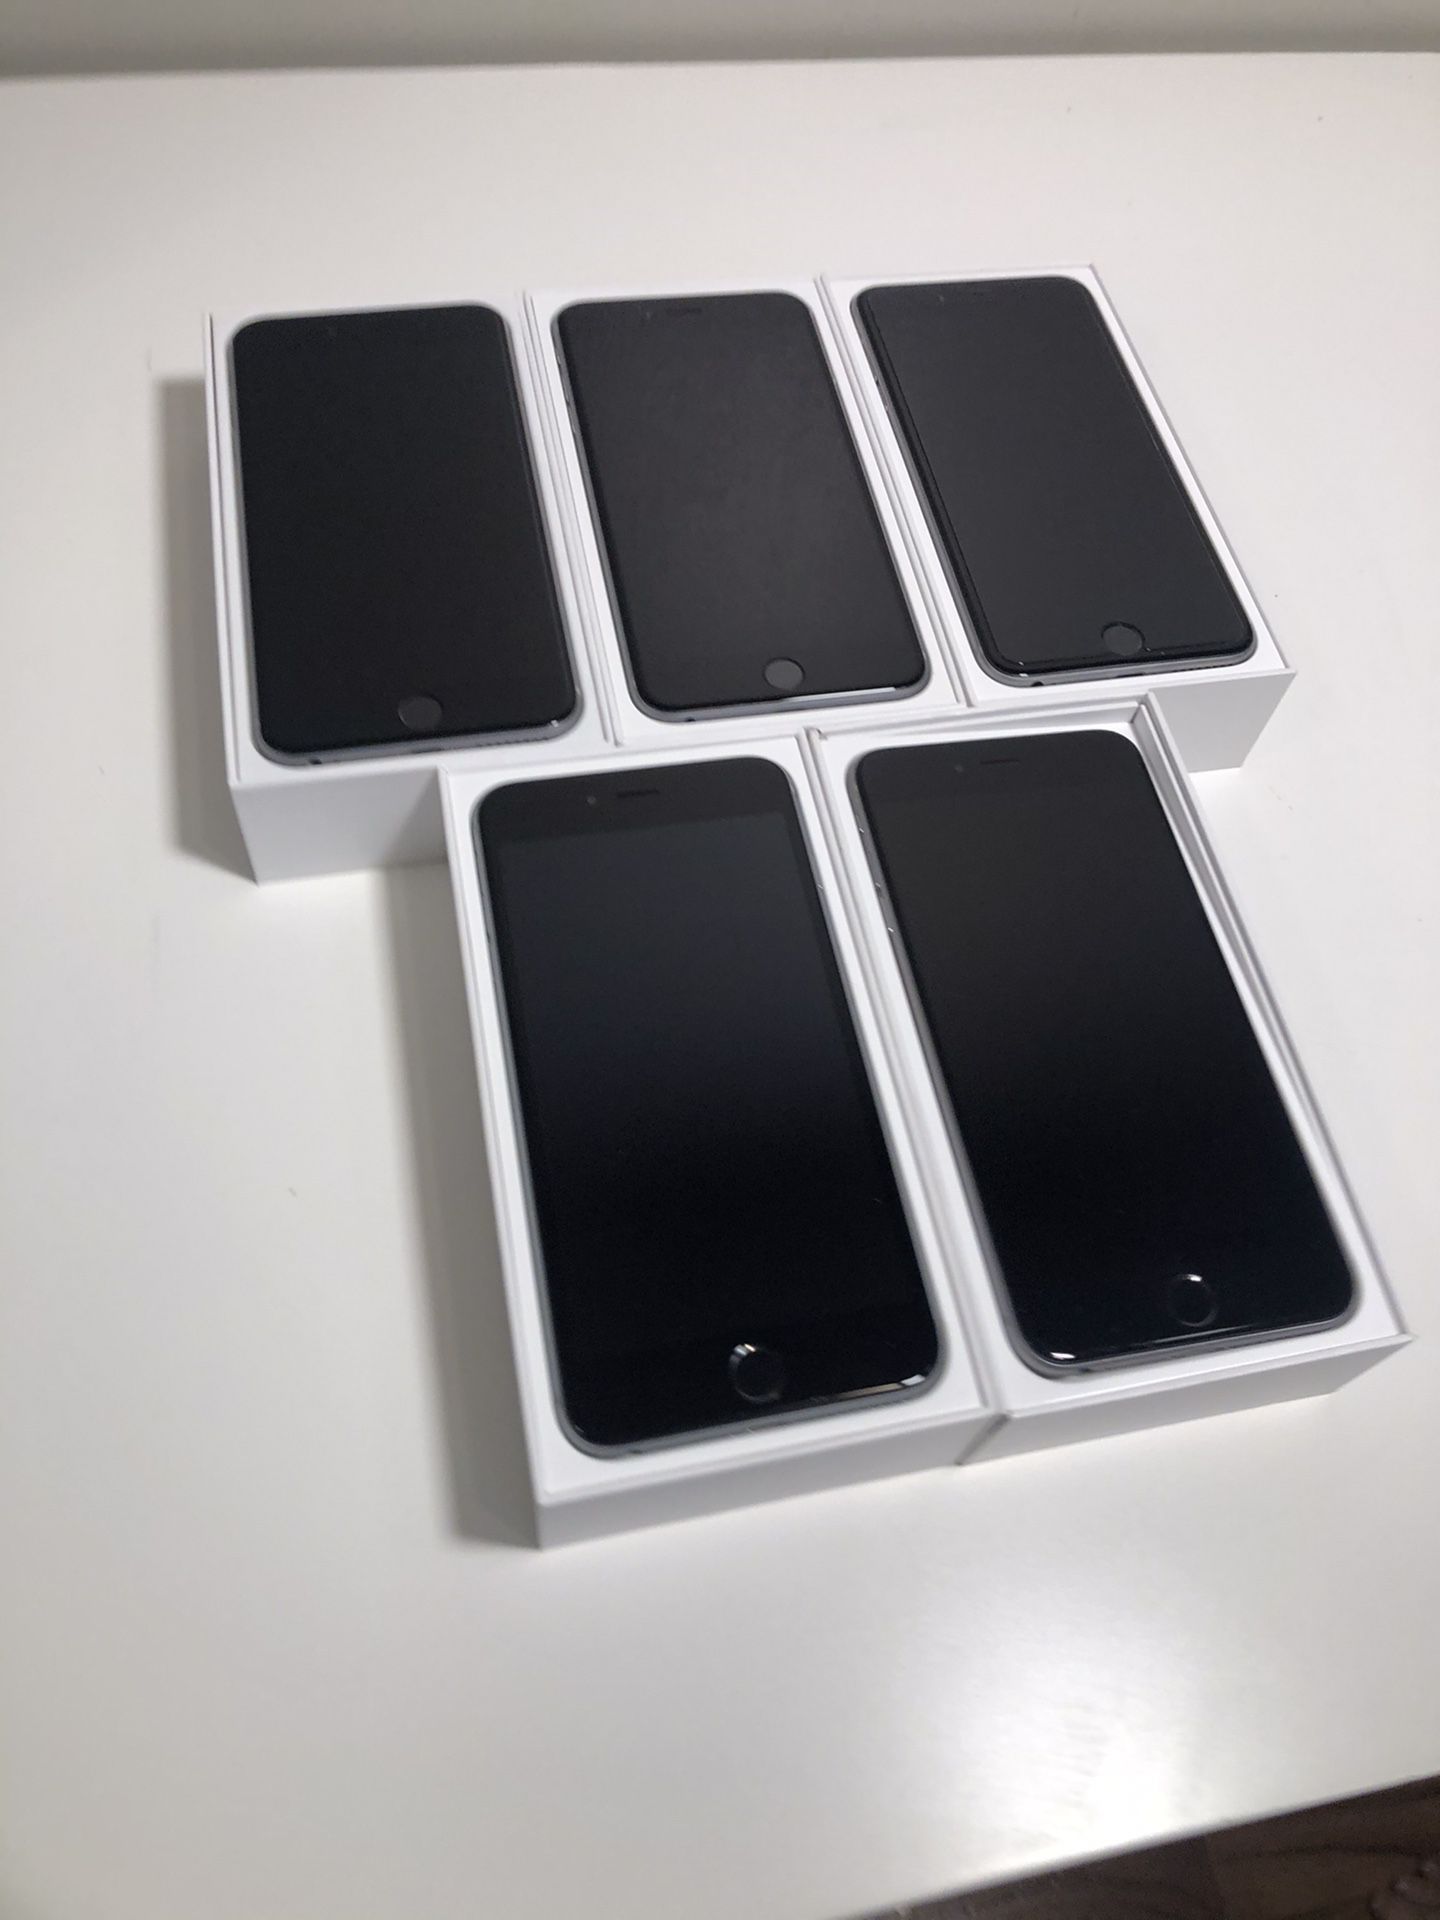 Apple iPhones 6s Plus (16GB, 64GB, 128GB available)